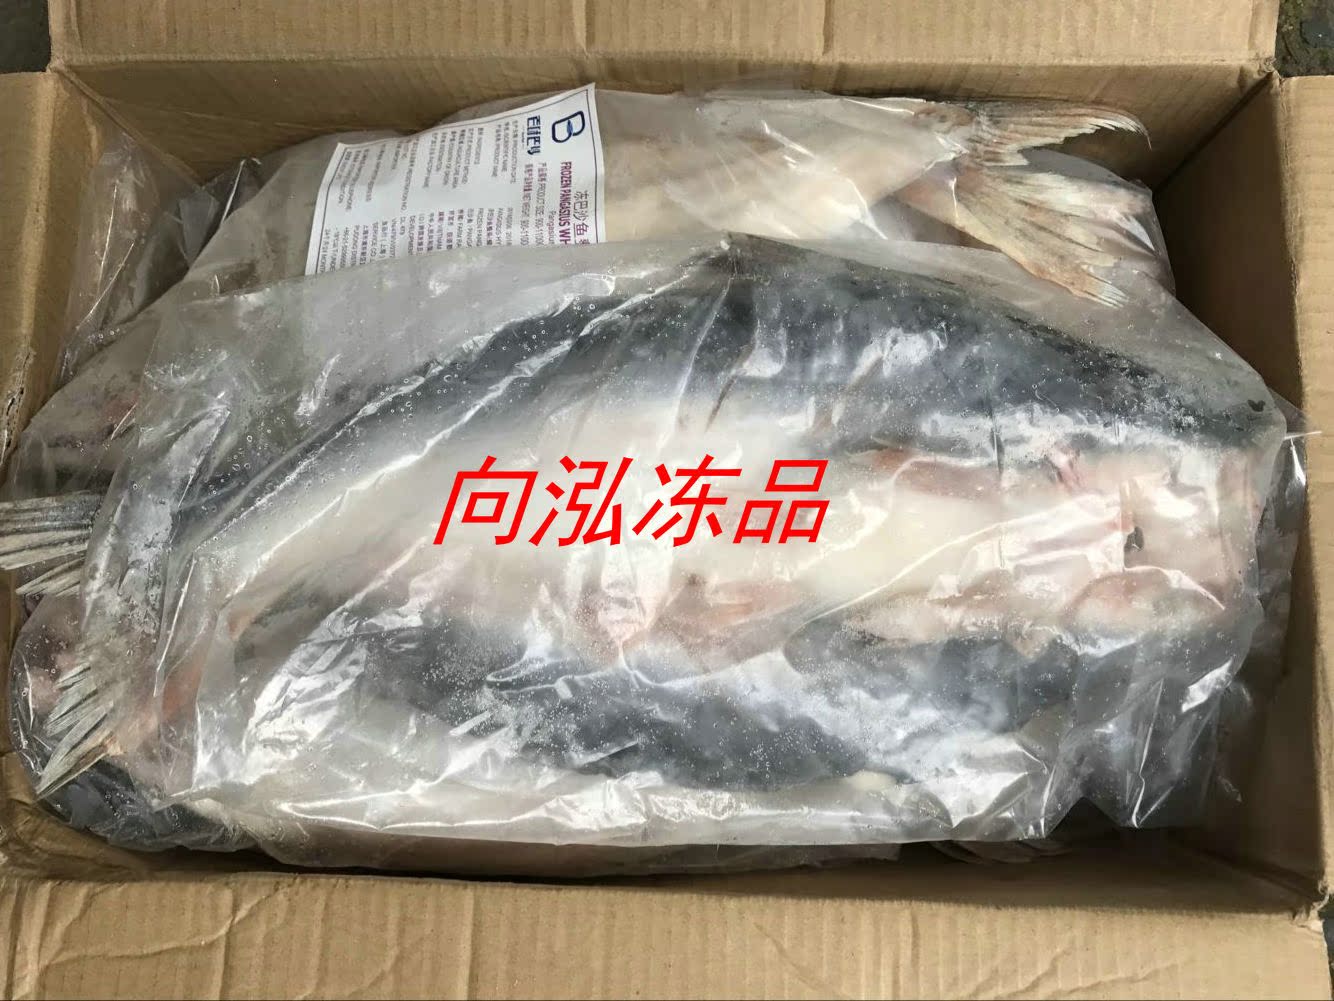 越南进口带皮巴沙鱼 原条开背巴沙鱼烤鱼食材 整箱20斤整条鱼包邮